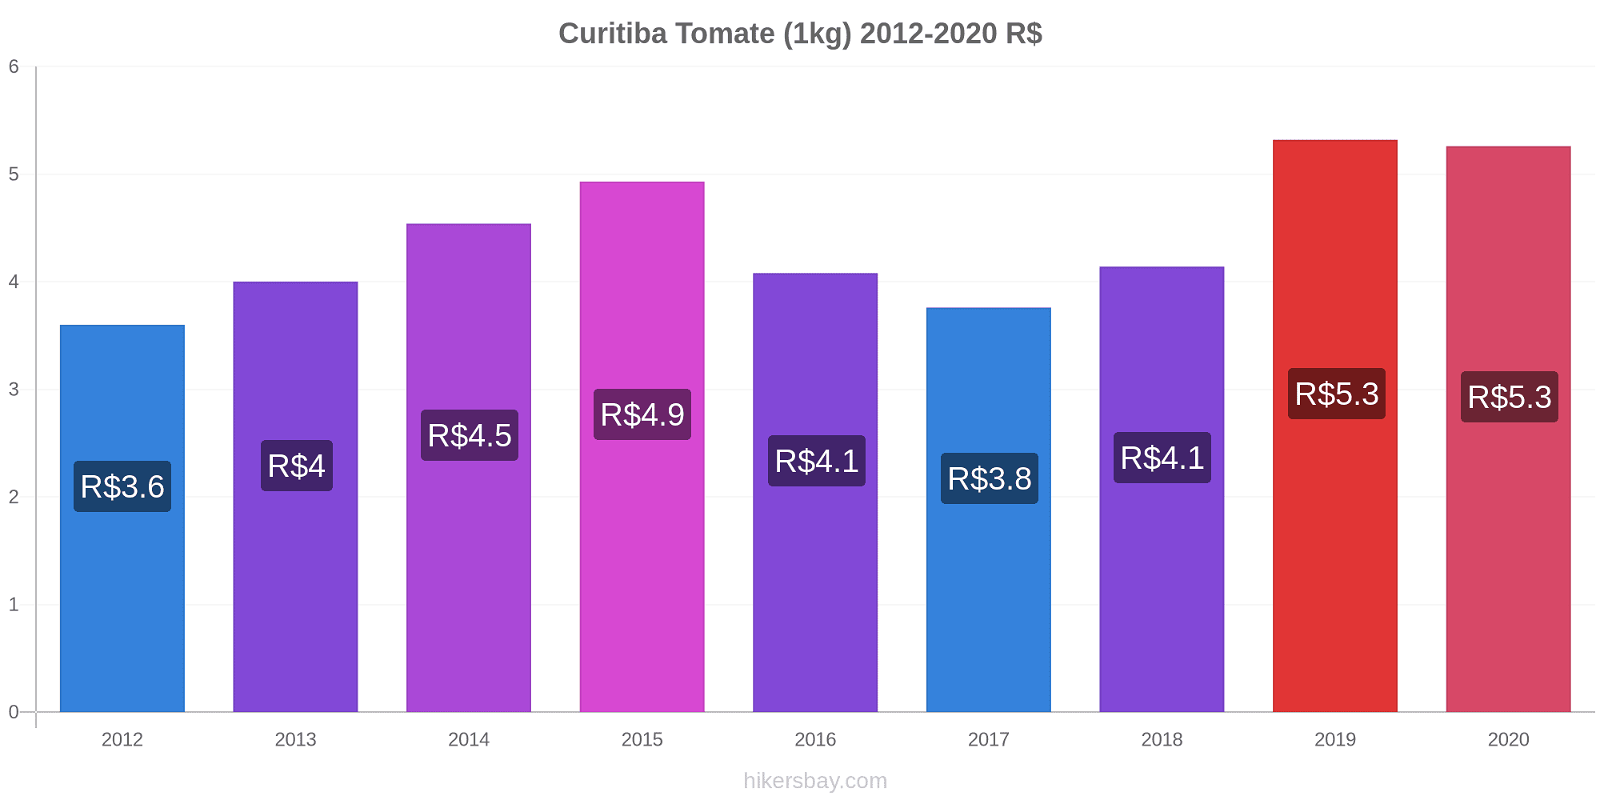 Curitiba cambios de precios Tomate (1kg) hikersbay.com